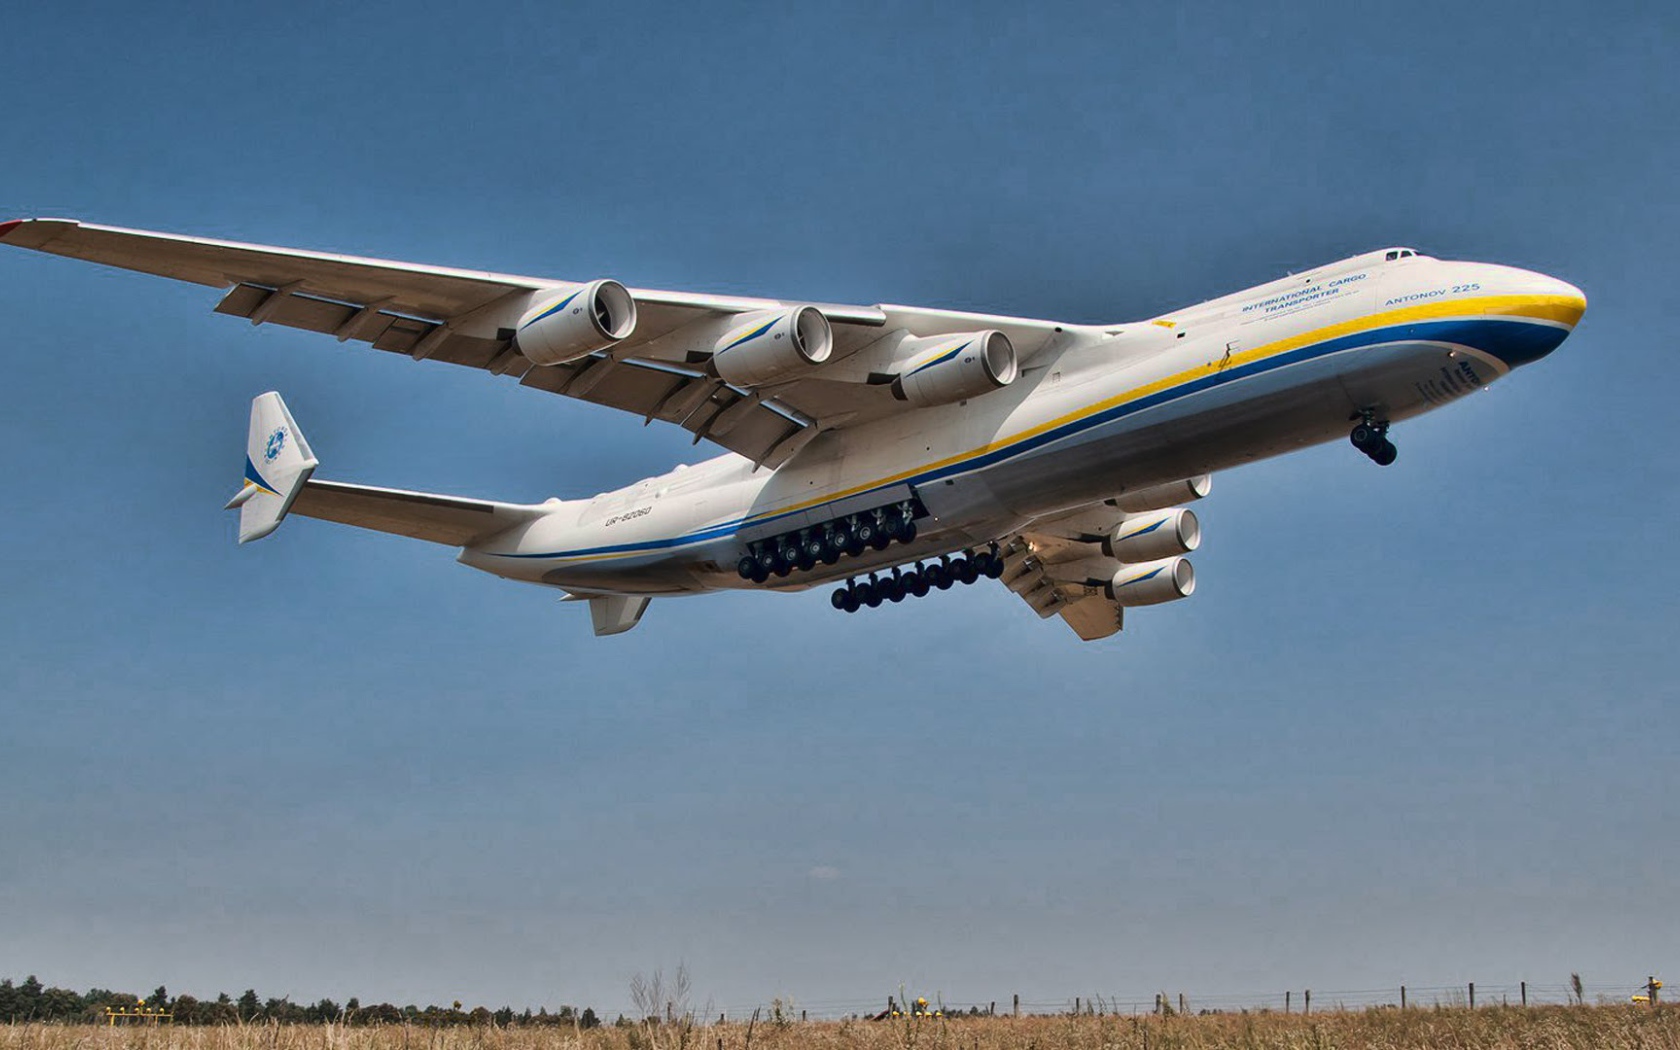 Самый большой самолет Ан-225 Мрия взлетает 